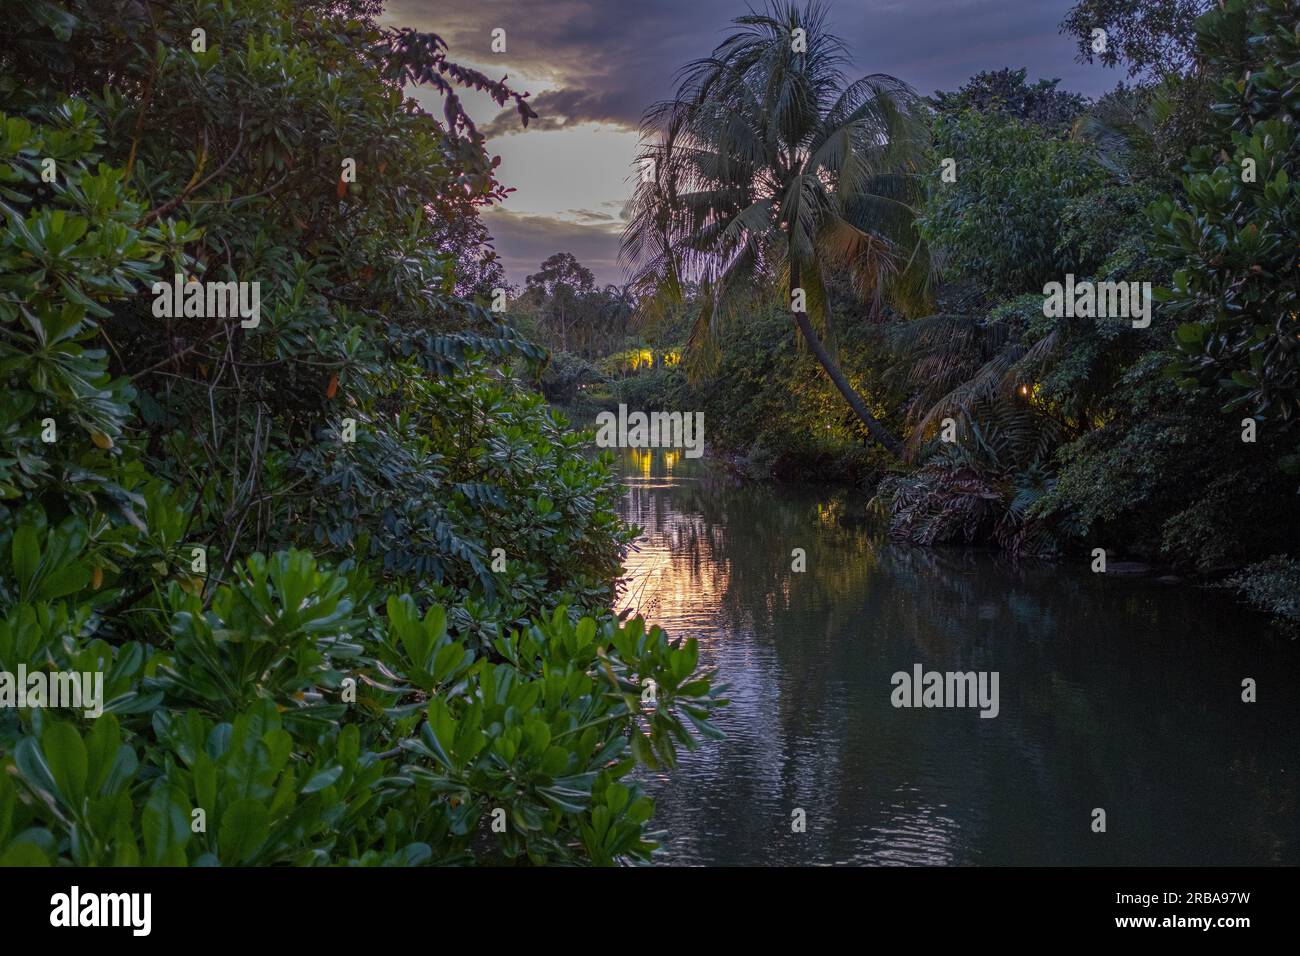 Un ruisseau d'eau traversant une végétation tropicale luxuriante dans les jardins près du parc de la baie à Singapour, pris au crépuscule, avec un peu de lumière artificielle et non Banque D'Images